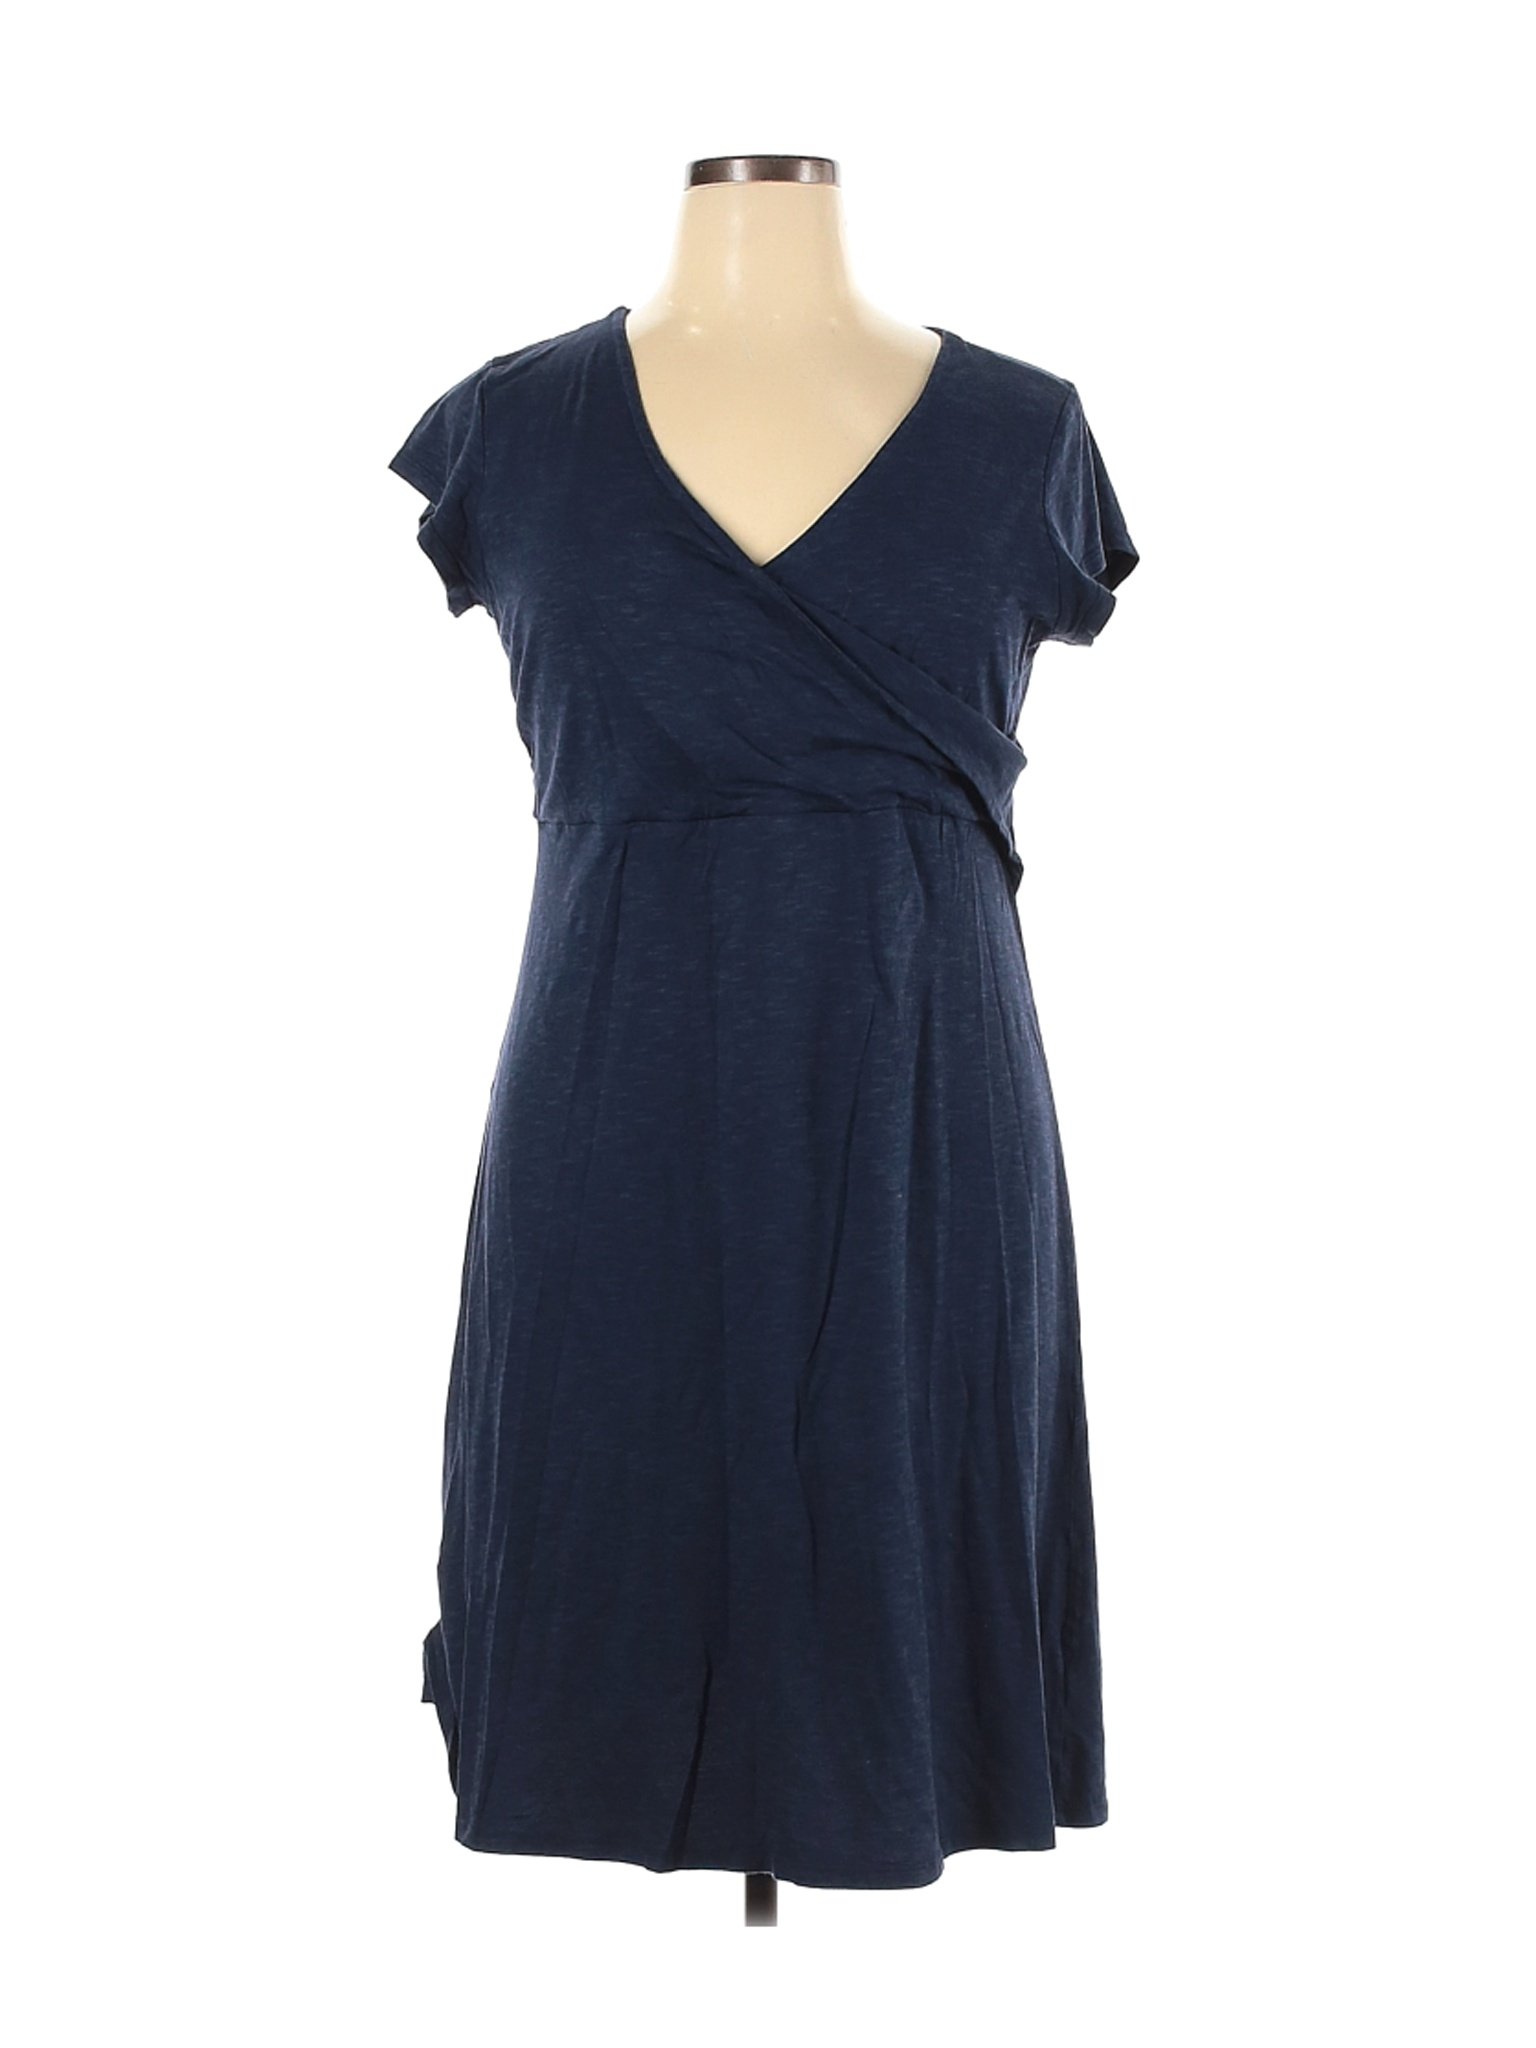 Toad & Co Women Blue Casual Dress XL | eBay